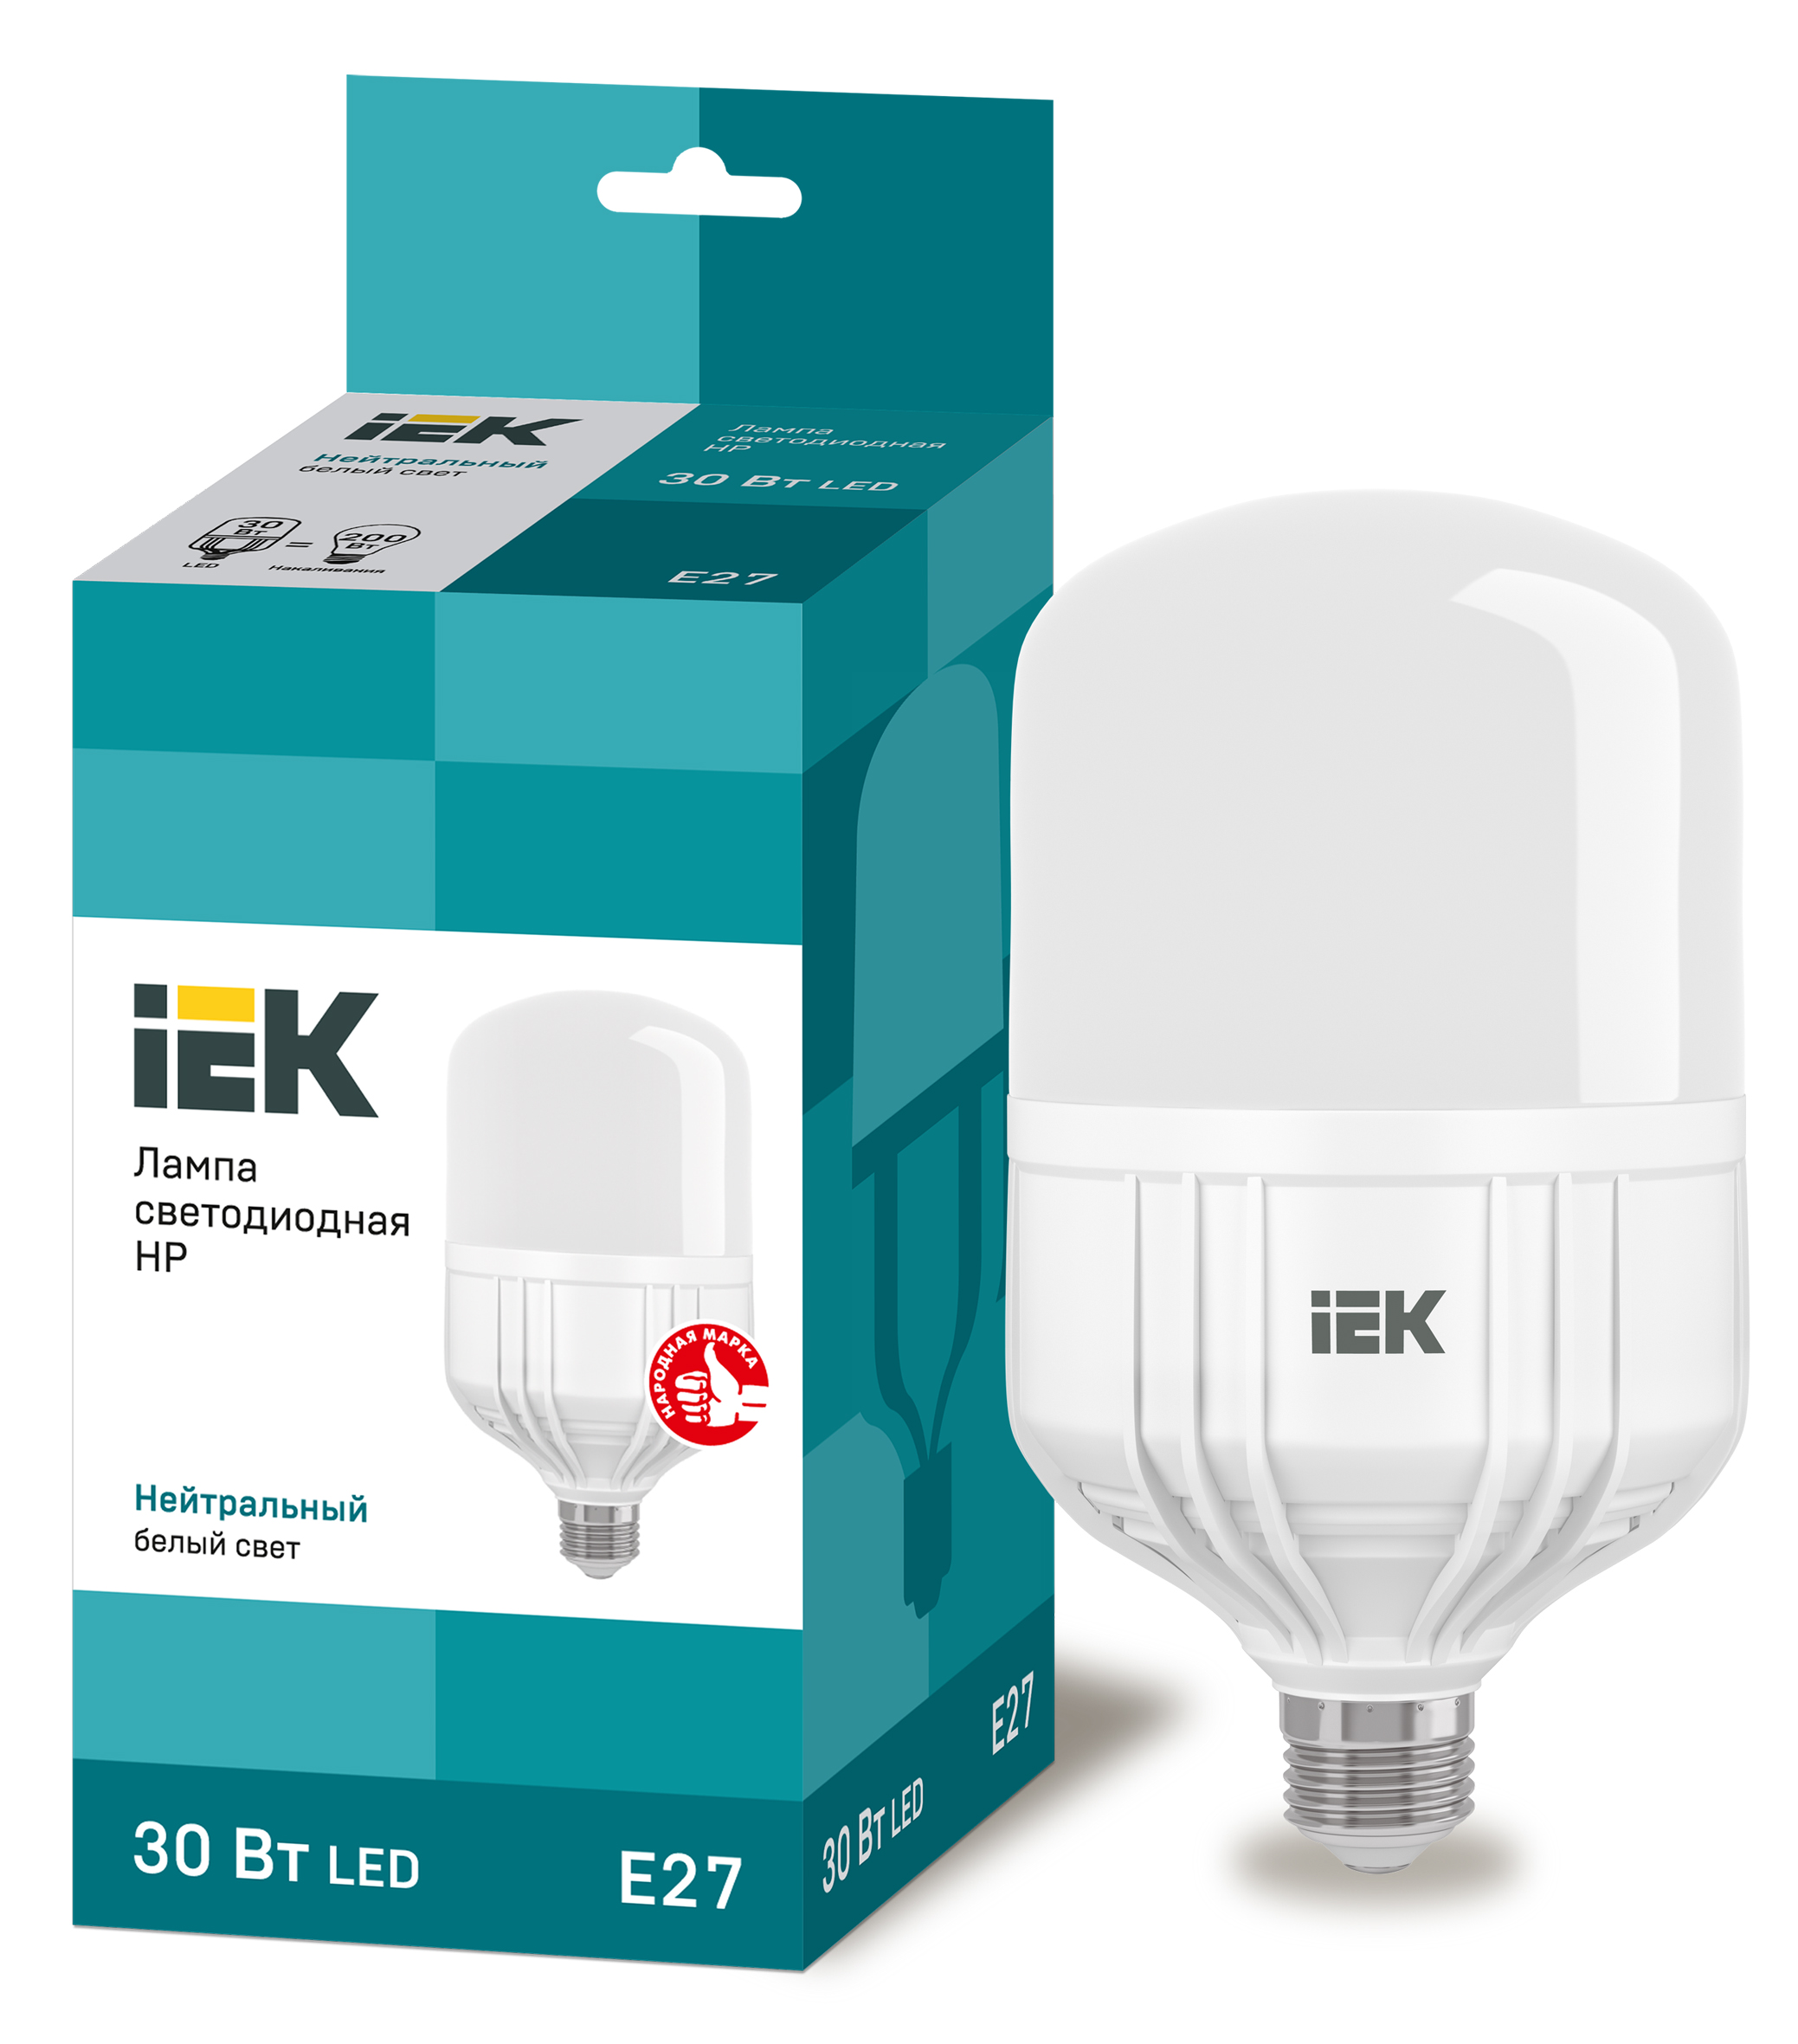 30W HP LED - T100-FR-30W-230V-E27-4000K "IEK" (1/10)